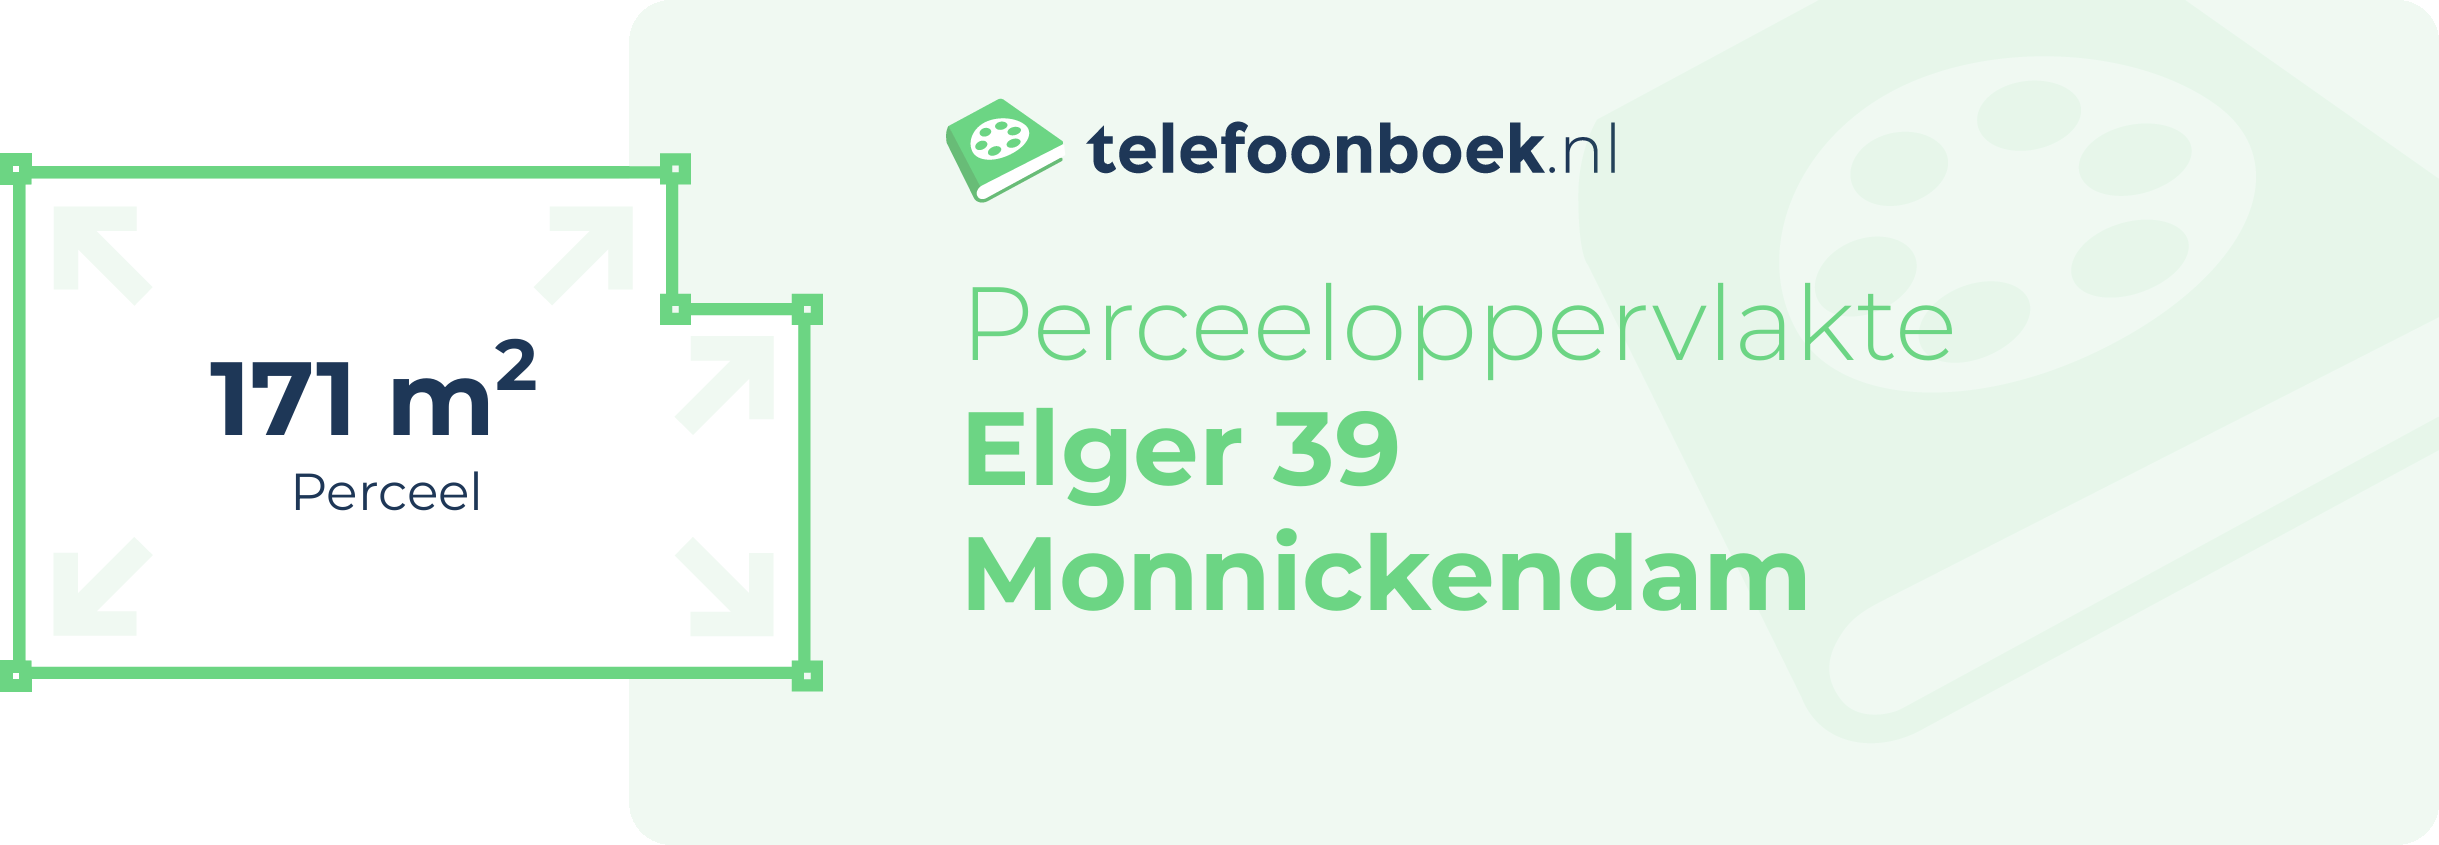 Perceeloppervlakte Elger 39 Monnickendam